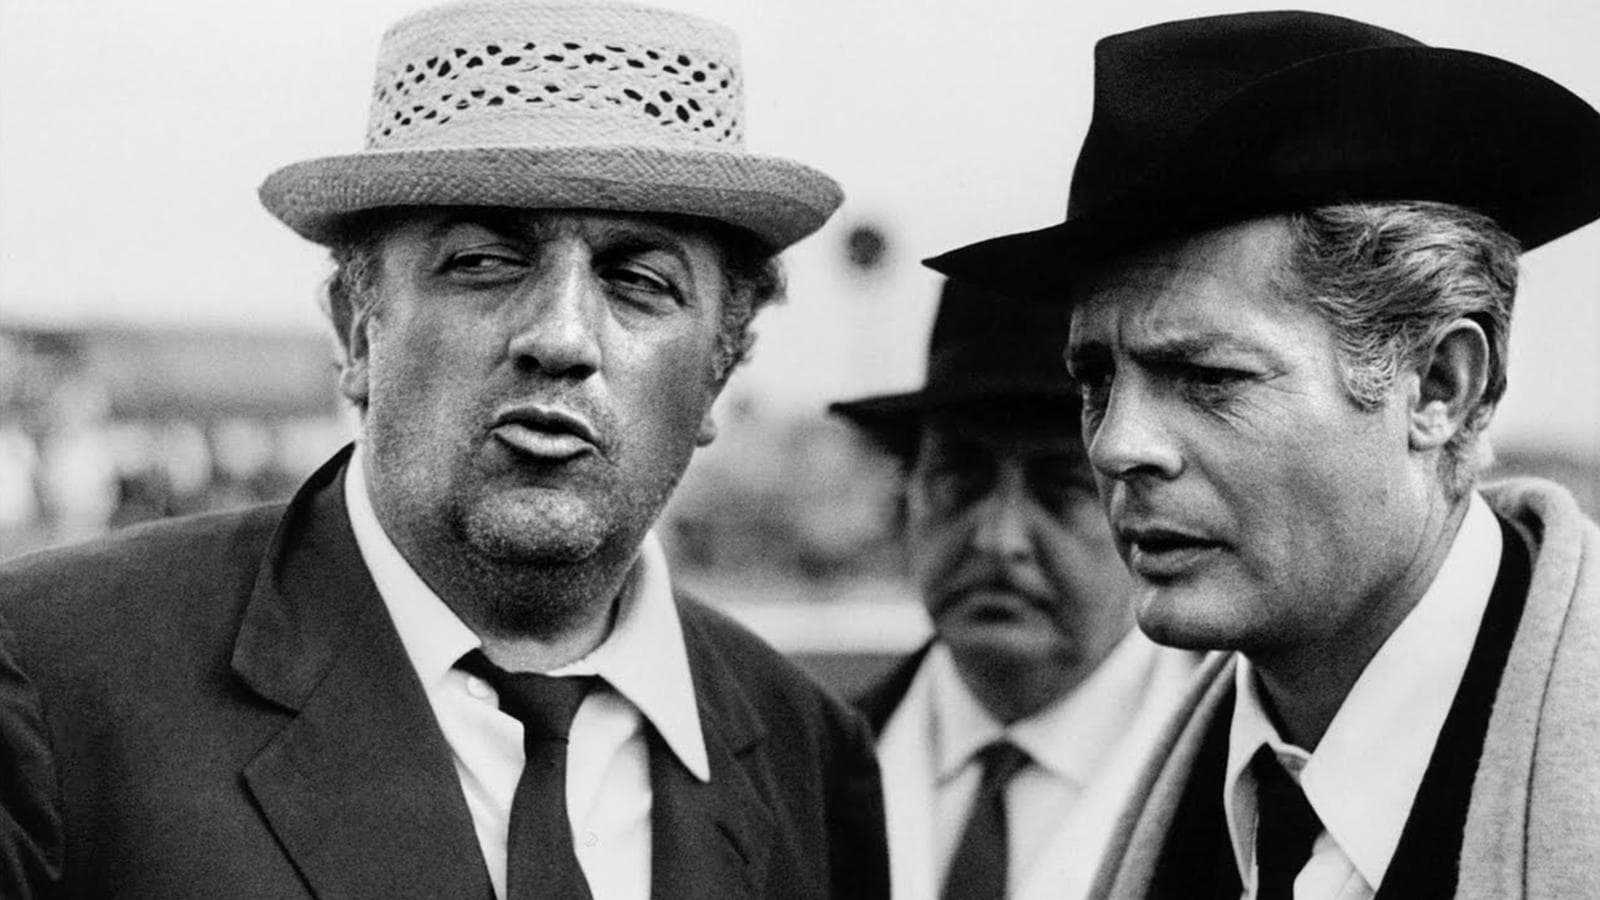 Stasera in TV: "Il grande cinema di Fellini su Rai Movie (canale 24)". "8 ½", l'opera più sincera del Maestro Stasera in TV: "Il grande cinema di Fellini su Rai Movie (canale 24)".  "8 ½", l'opera più sincera del Maestro